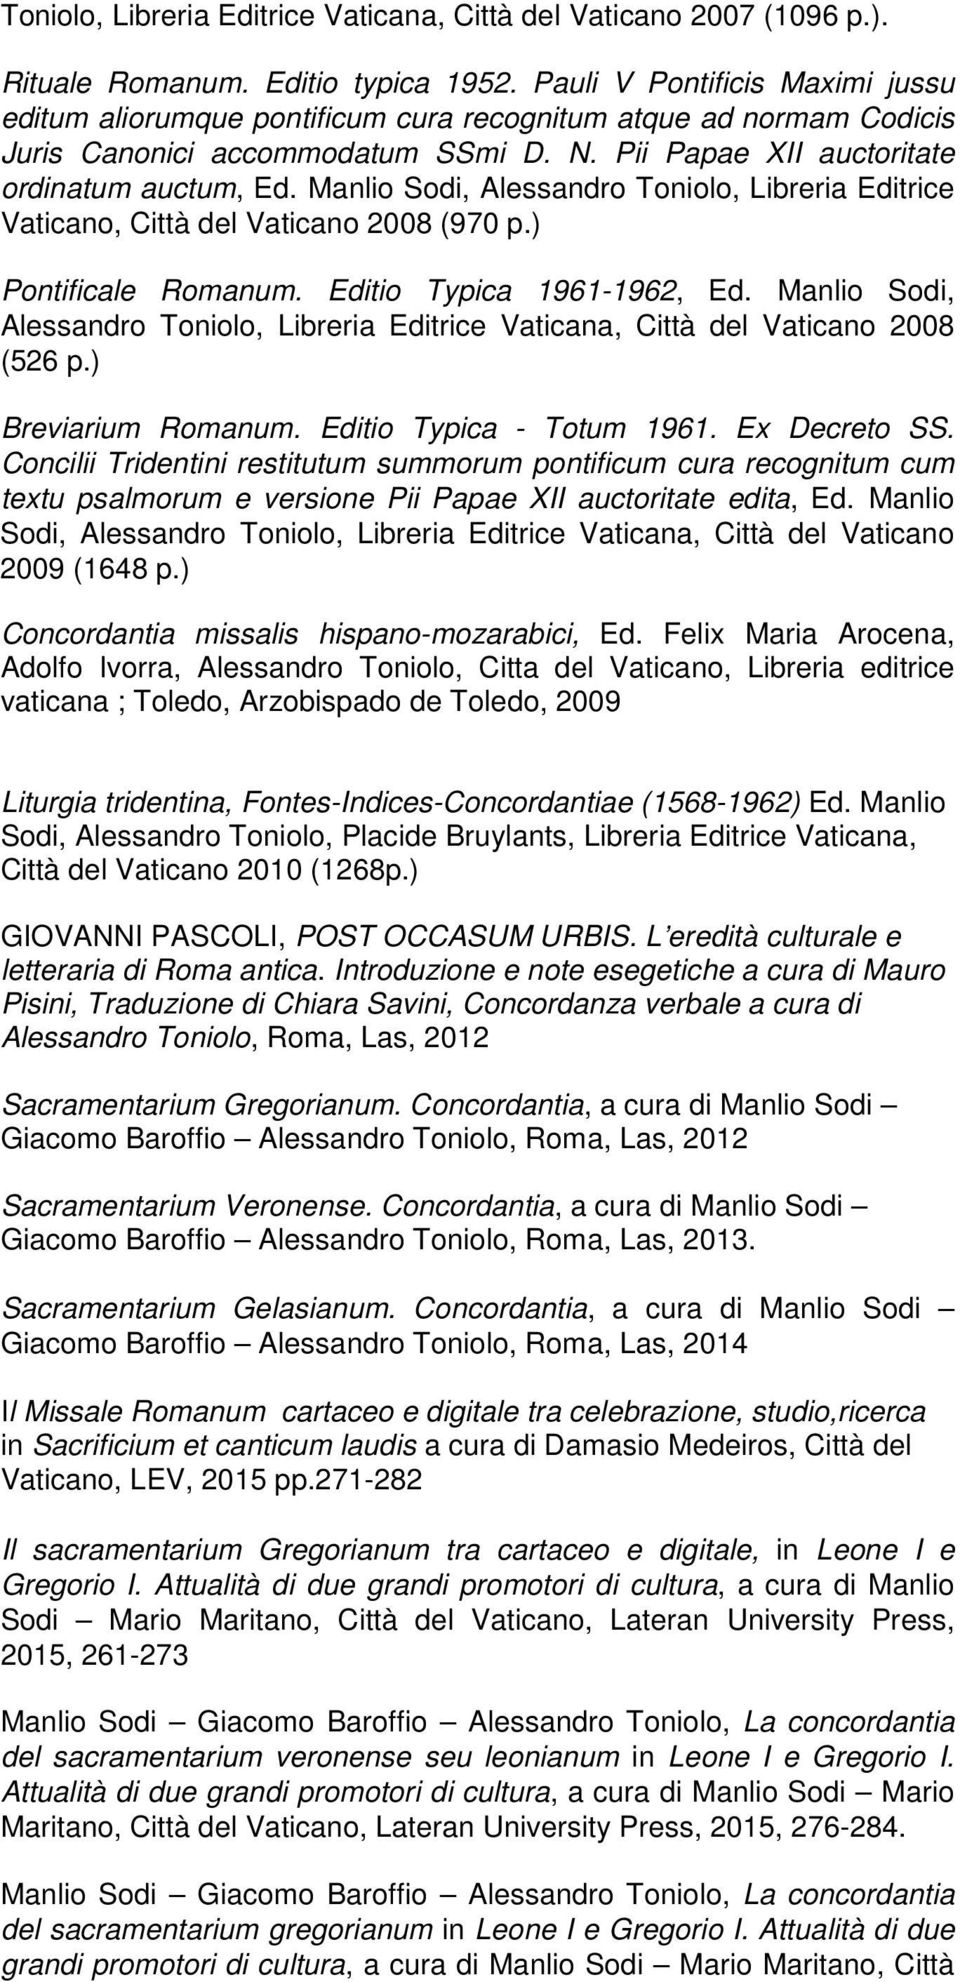 Manlio Sodi, Alessandro Toniolo, Libreria Editrice Vaticano, Città del Vaticano 2008 (970 p.) Pontificale Romanum. Editio Typica 1961-1962, Ed.